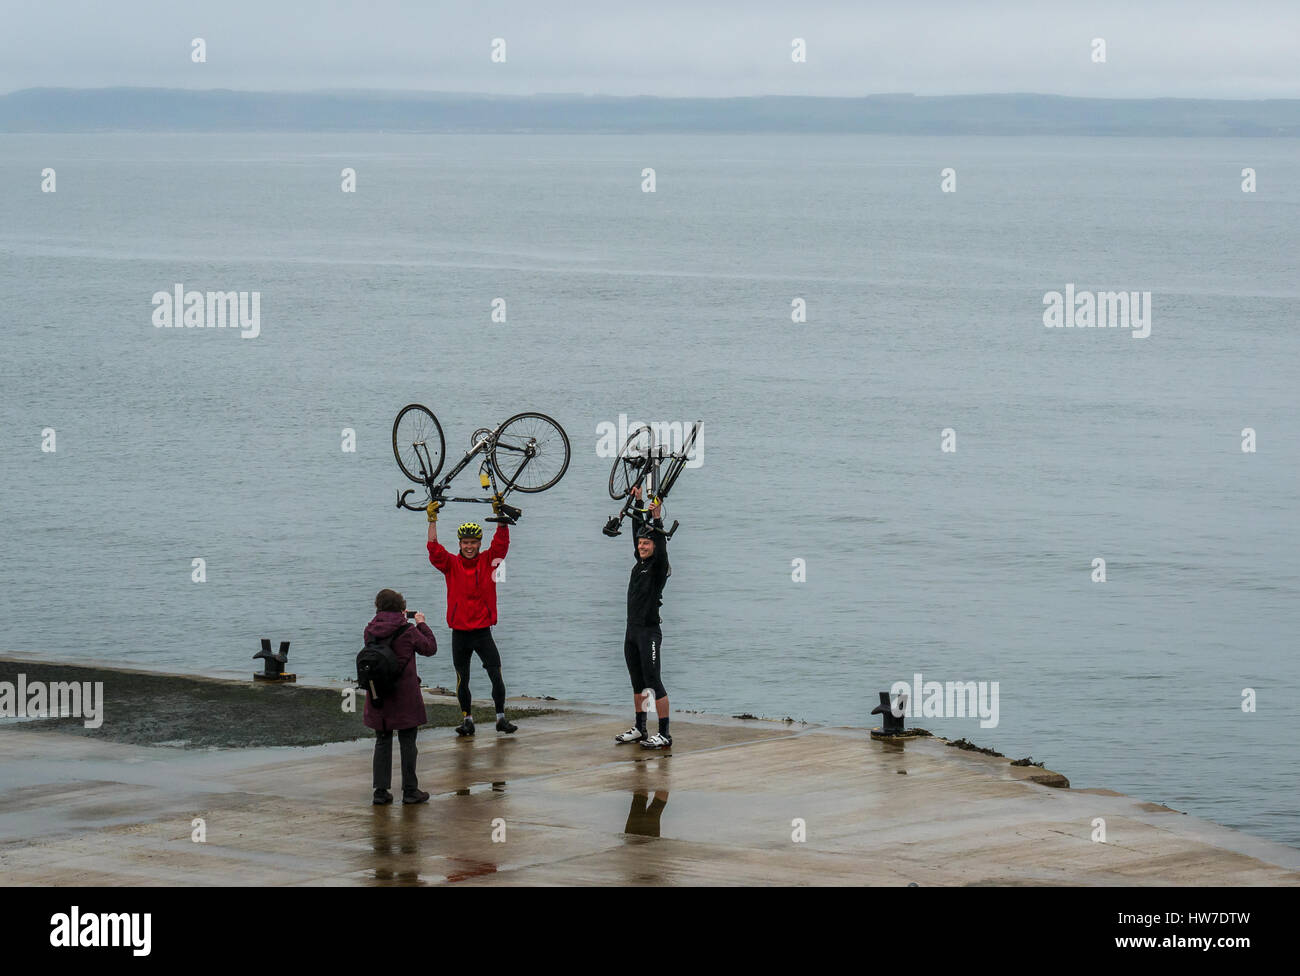 Radfahrer feiern Ende der Fahrradtour, die ihr Foto auf Pier, North Berwick, East Lothian, Schottland, UK, Leihfahrräder angehoben über den Köpfen Stockfoto